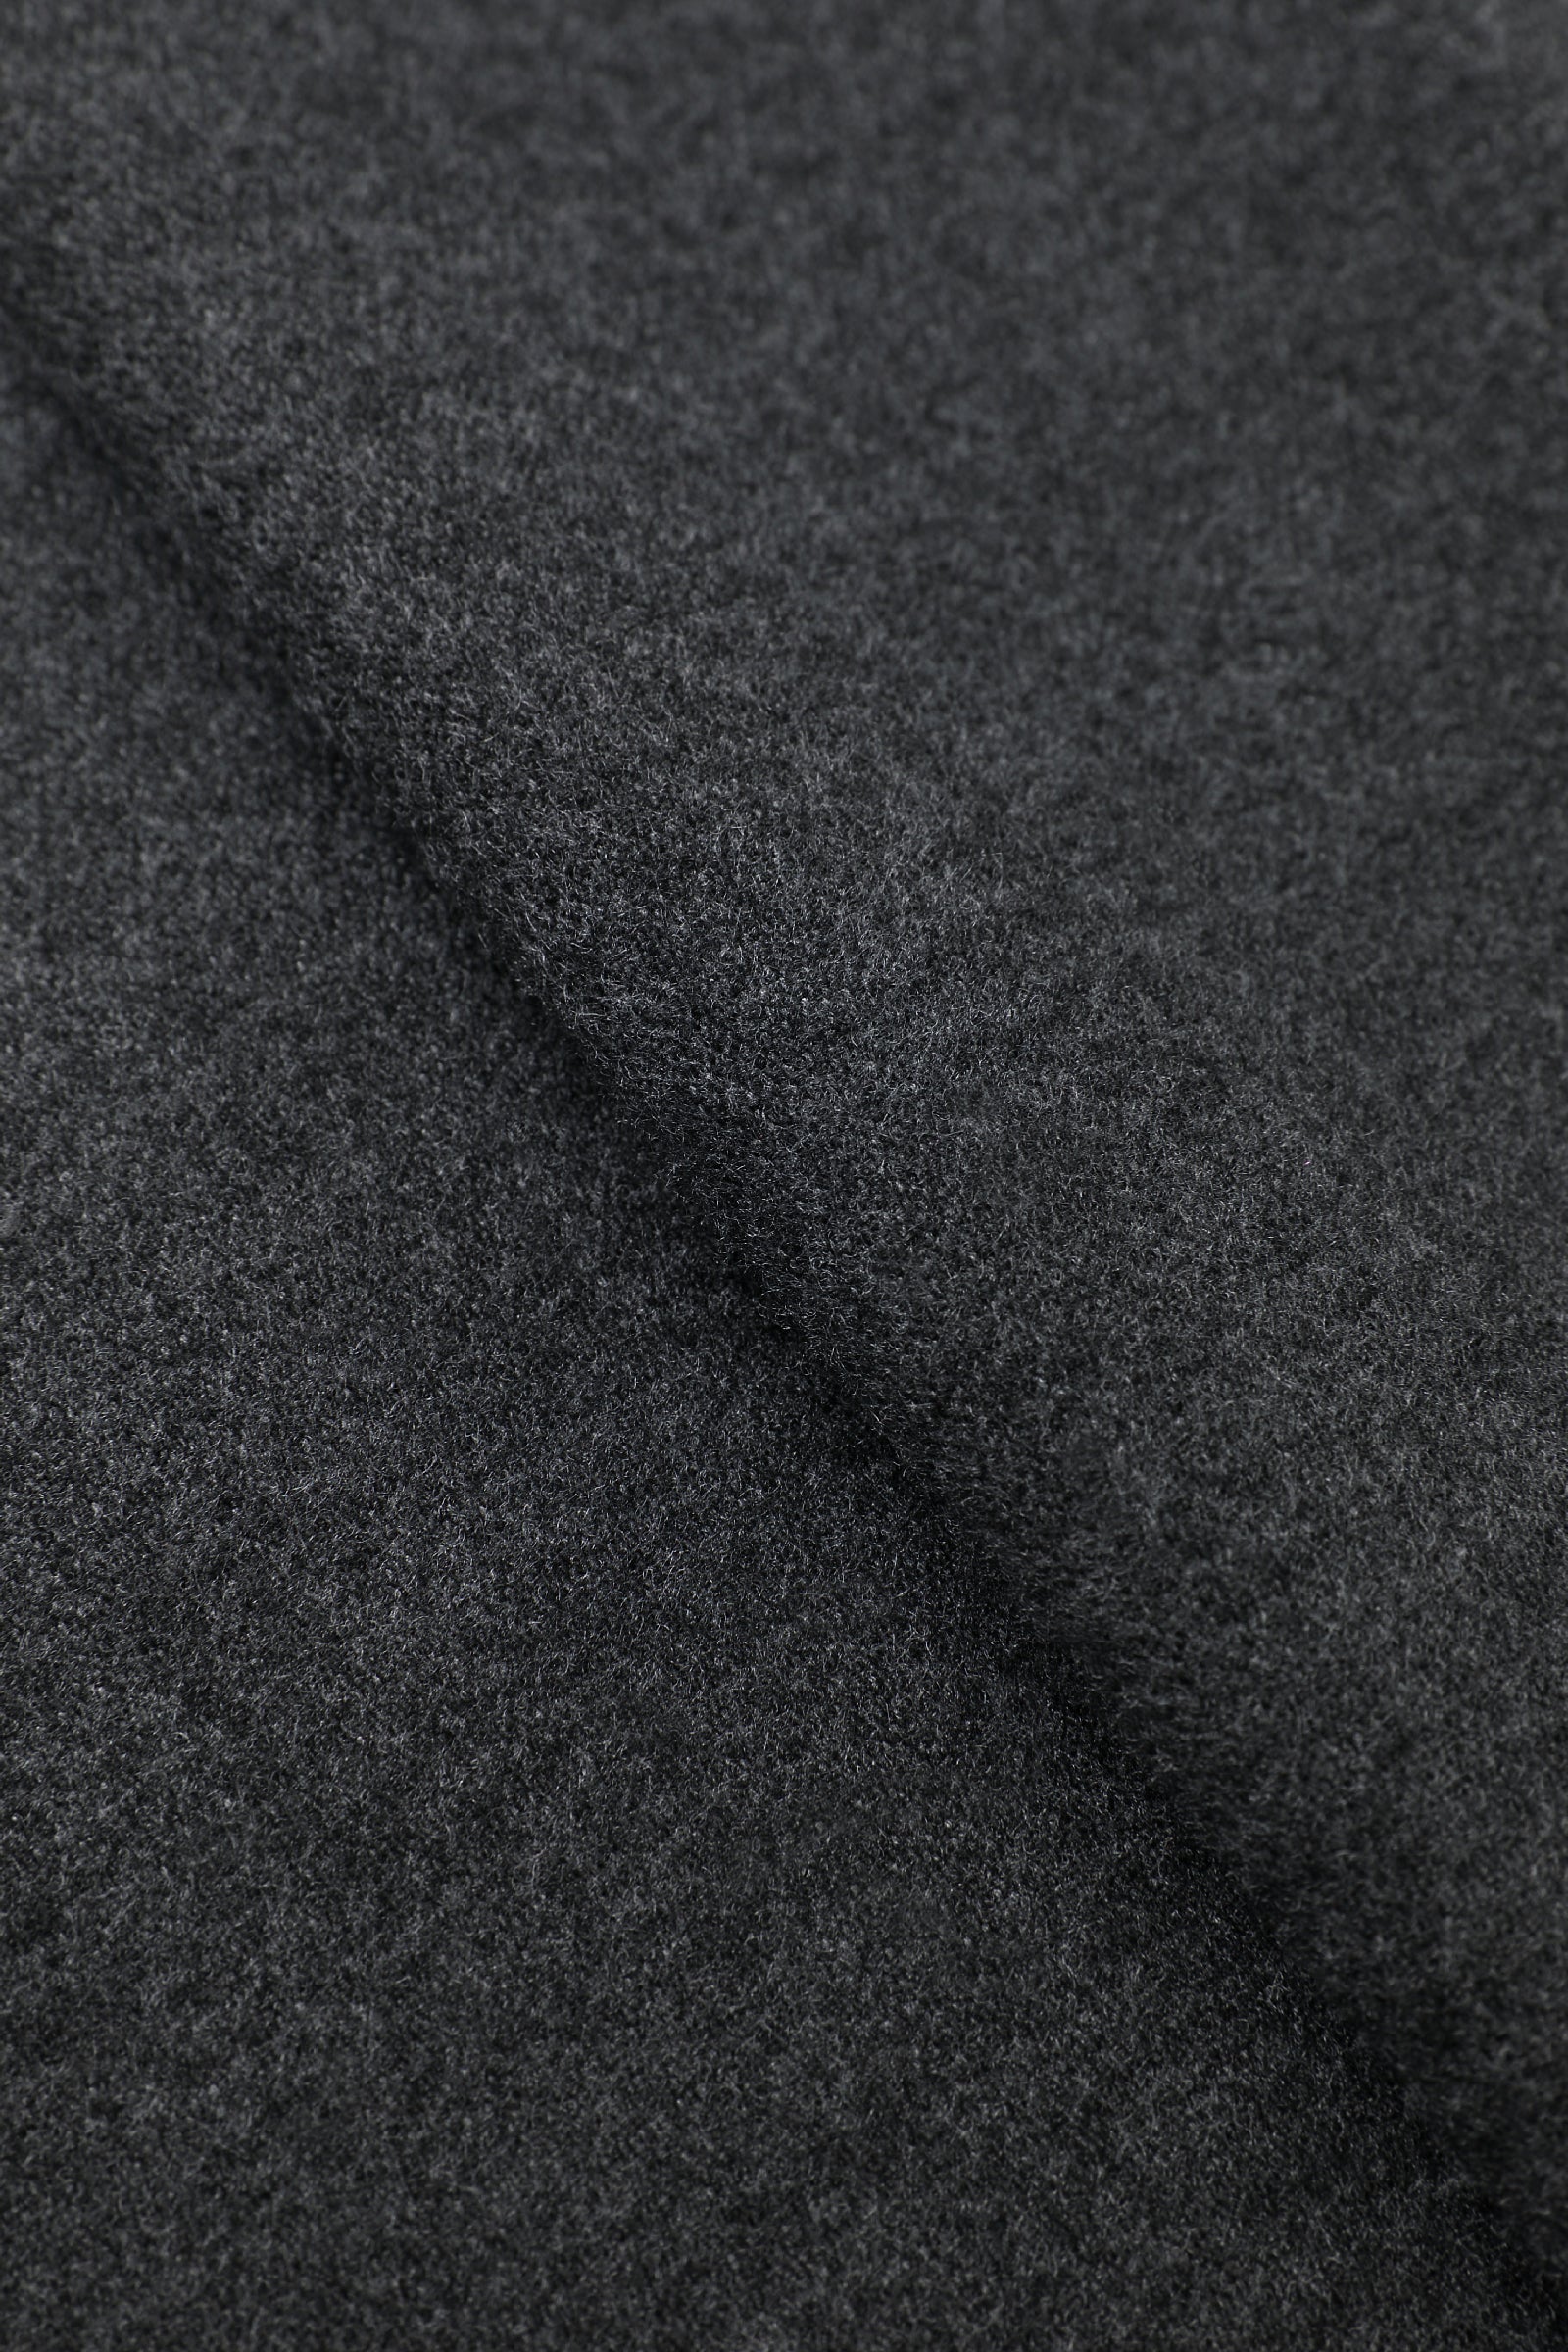 Dark Grey Charcoal Scarf Fabric